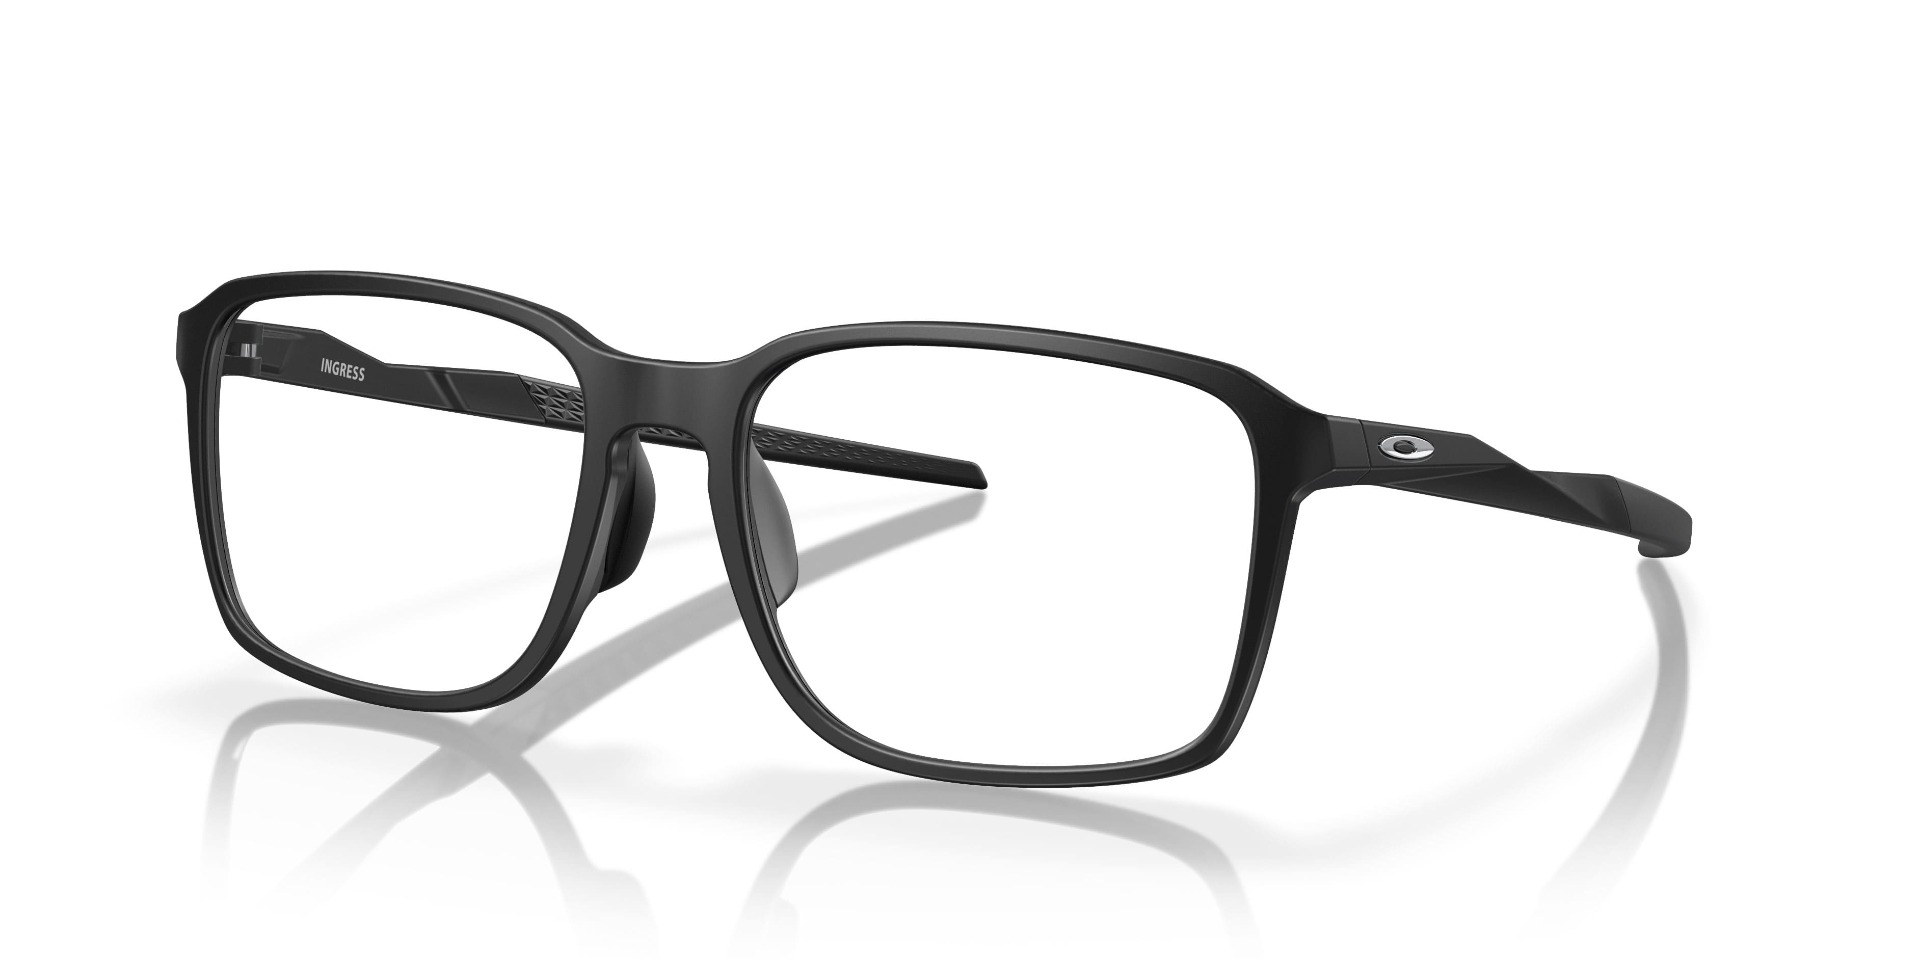 Briller - Ingress fra Oakley - Svart - plast - firkantet - large